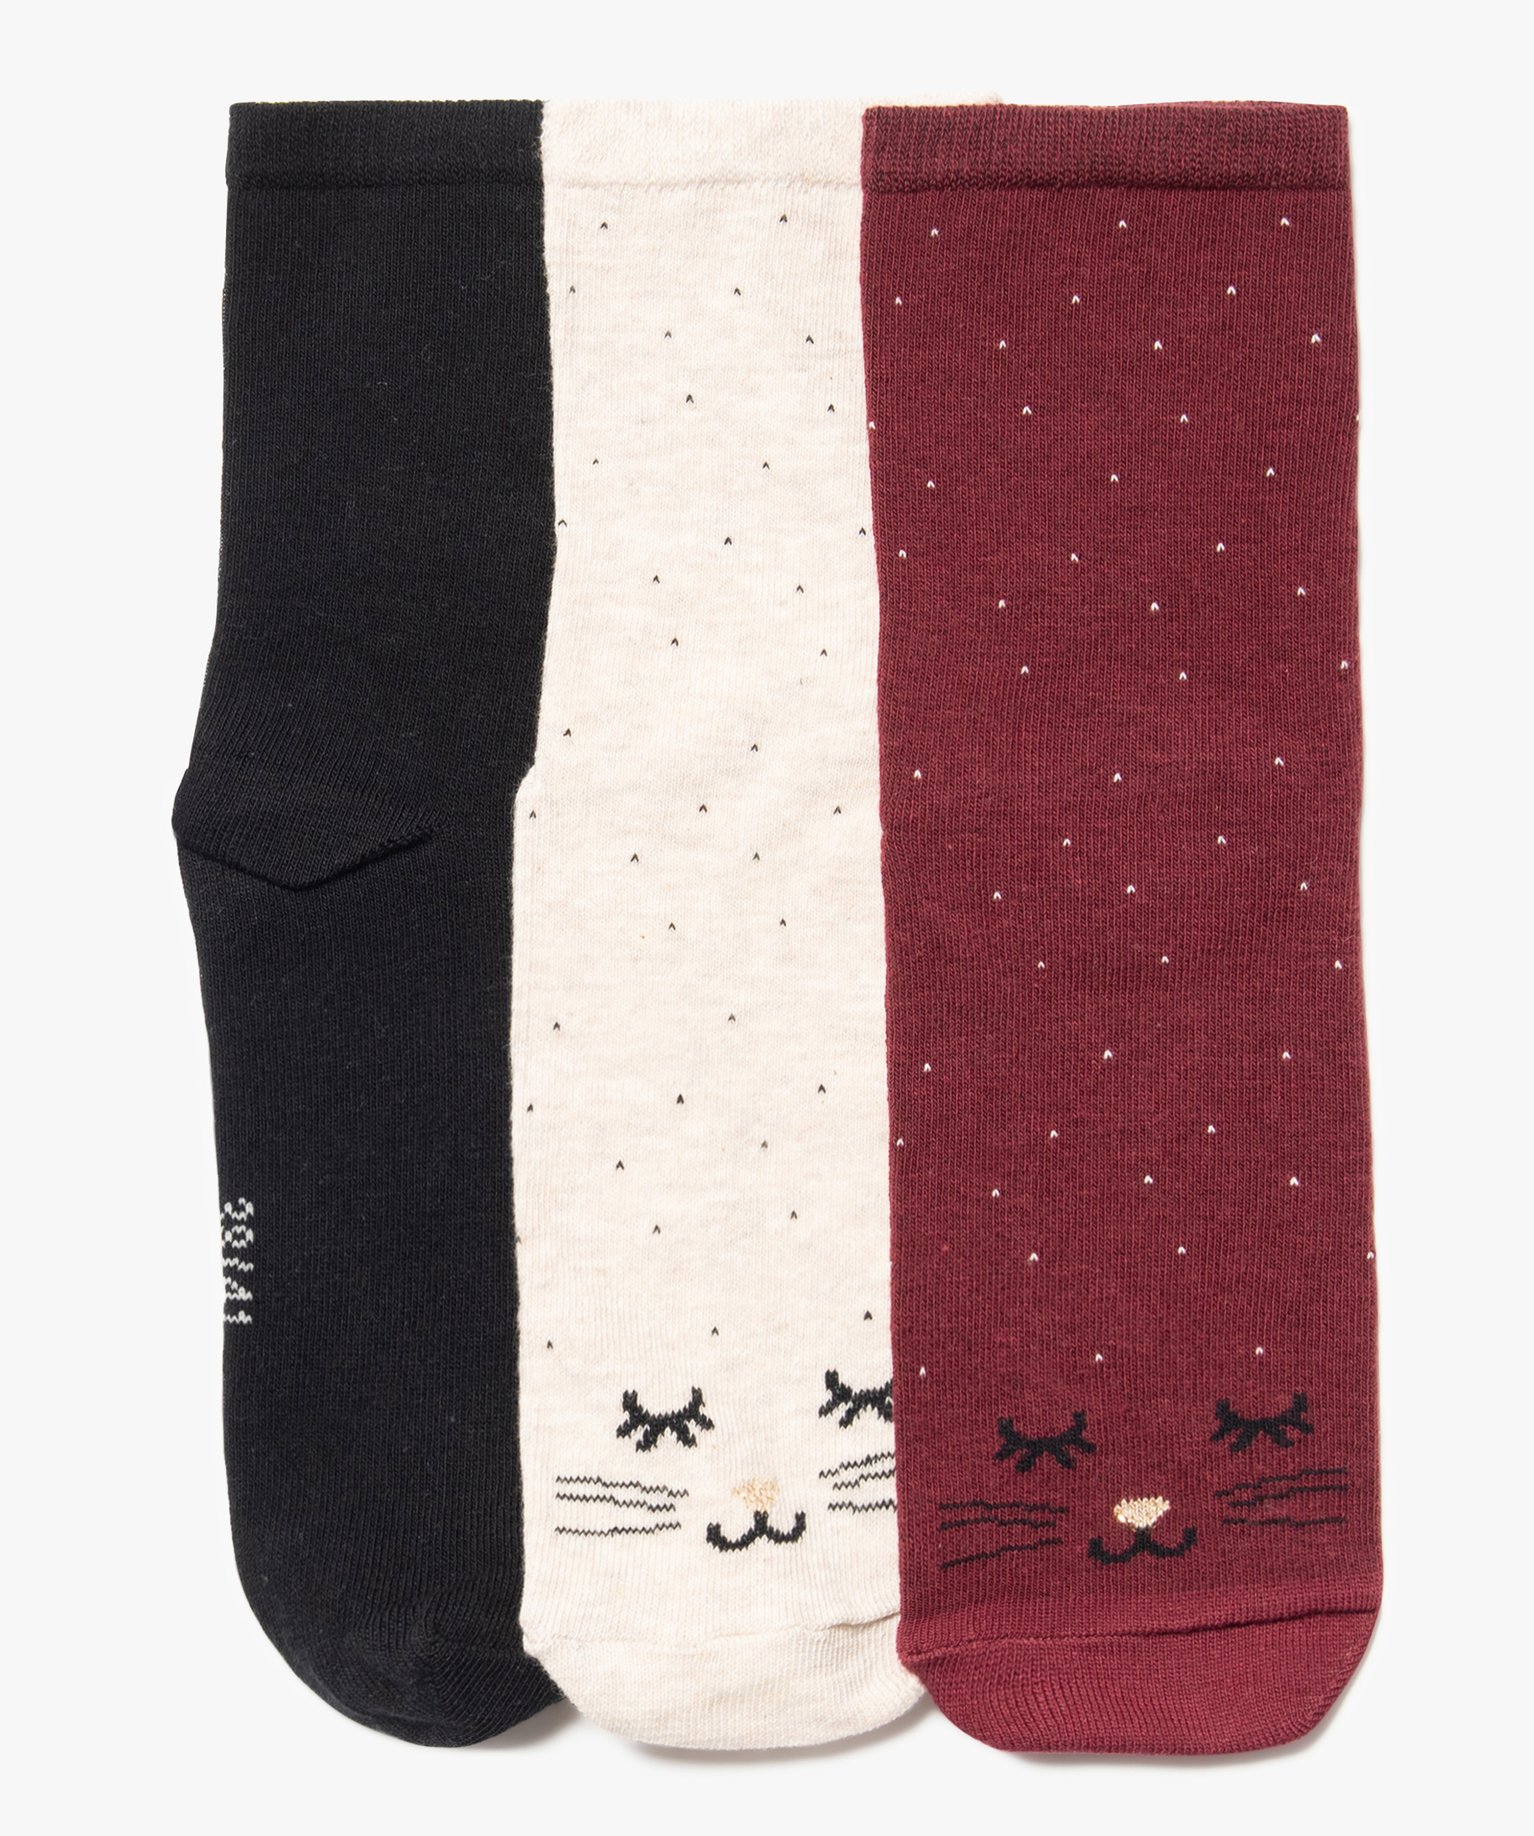 chaussettes tige haute a motif chat femme (lot de 3 paires) rouge chaussettes